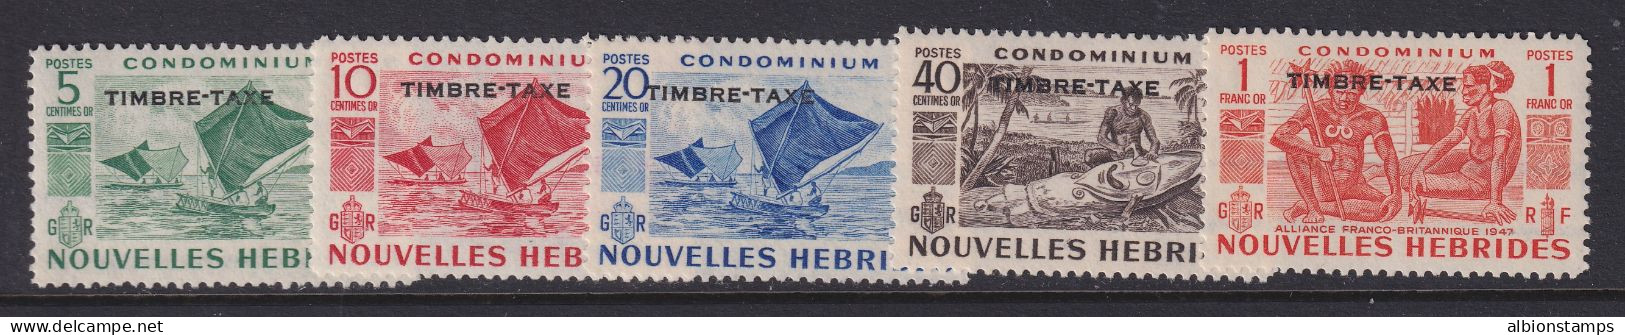 New Hebrides (French), Scott J16-J20 (Yvert TT26-TT30), MNH - Postage Due